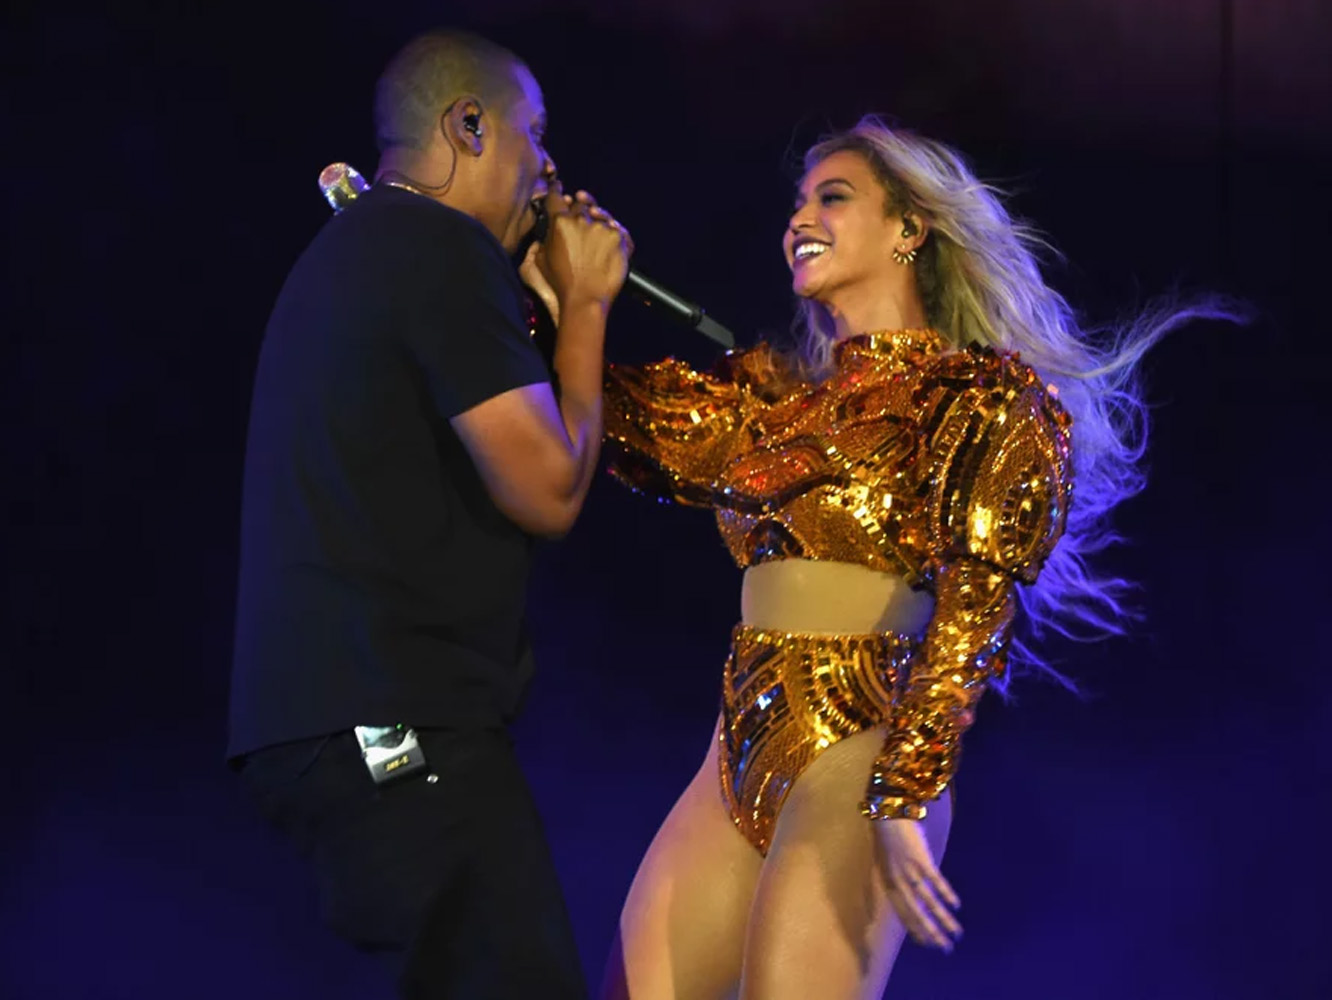  Confusión en el concierto Beyoncé y Jay-Z al subir un agresor al escenario